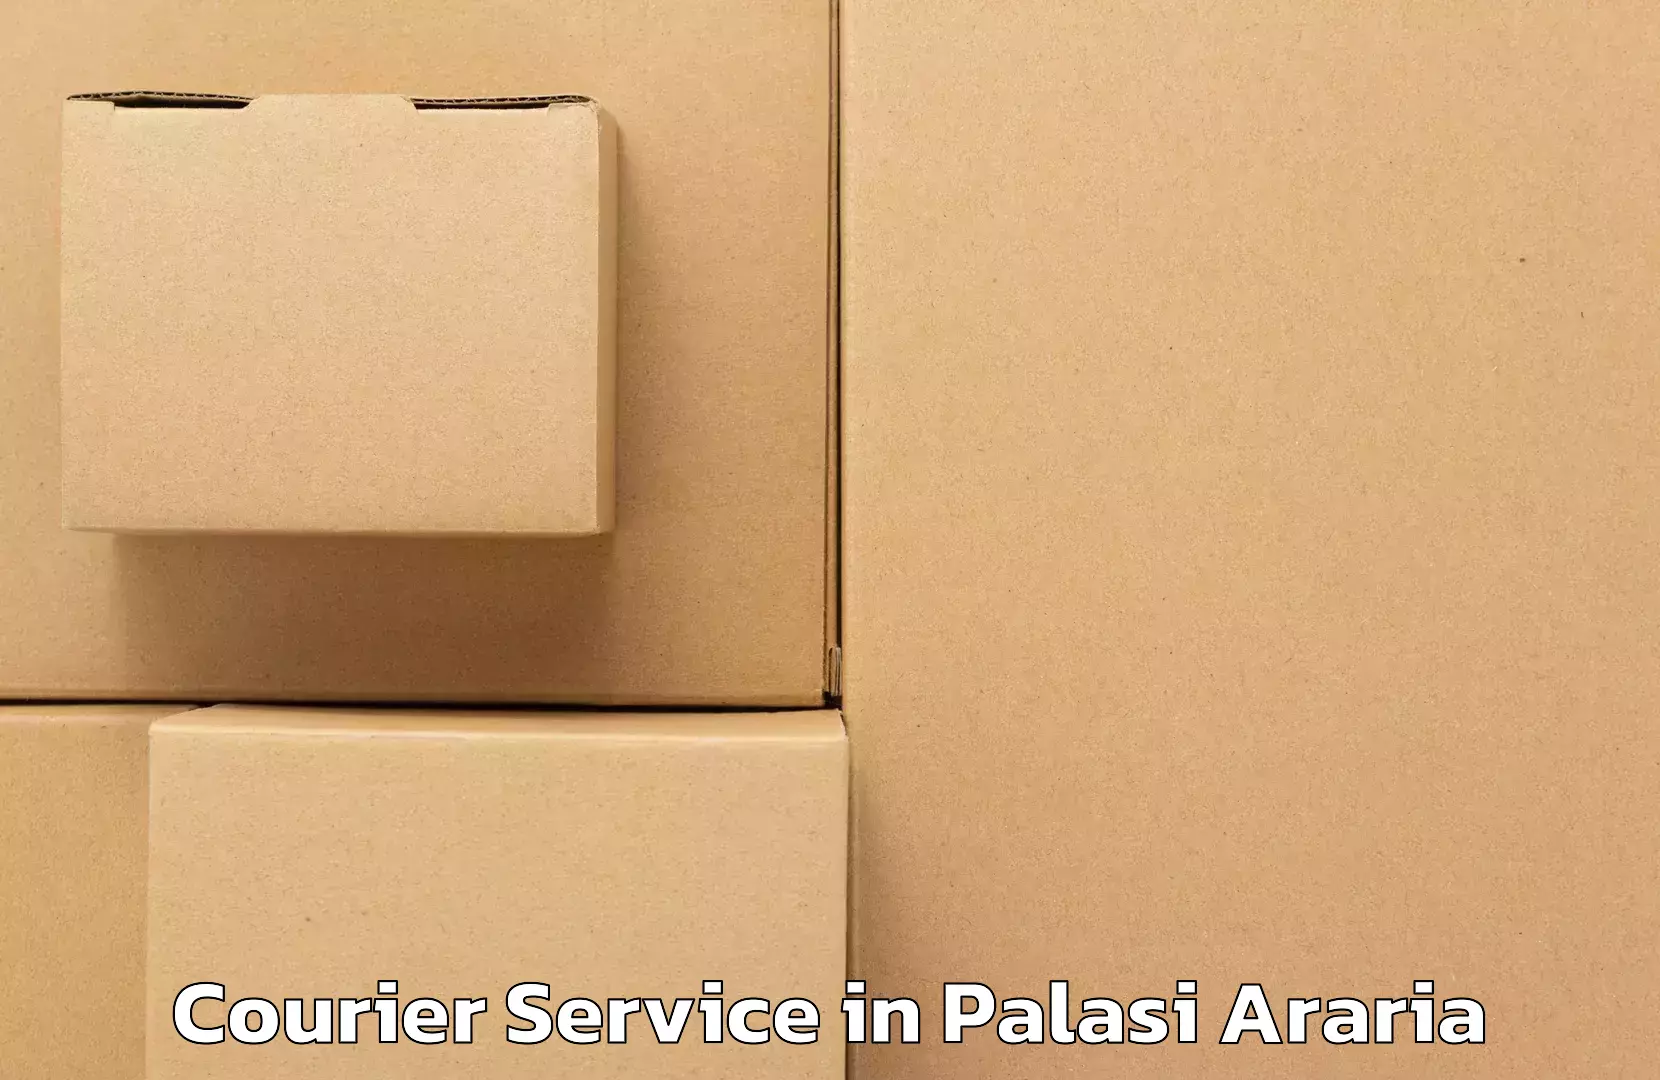 Quick parcel dispatch in Palasi Araria